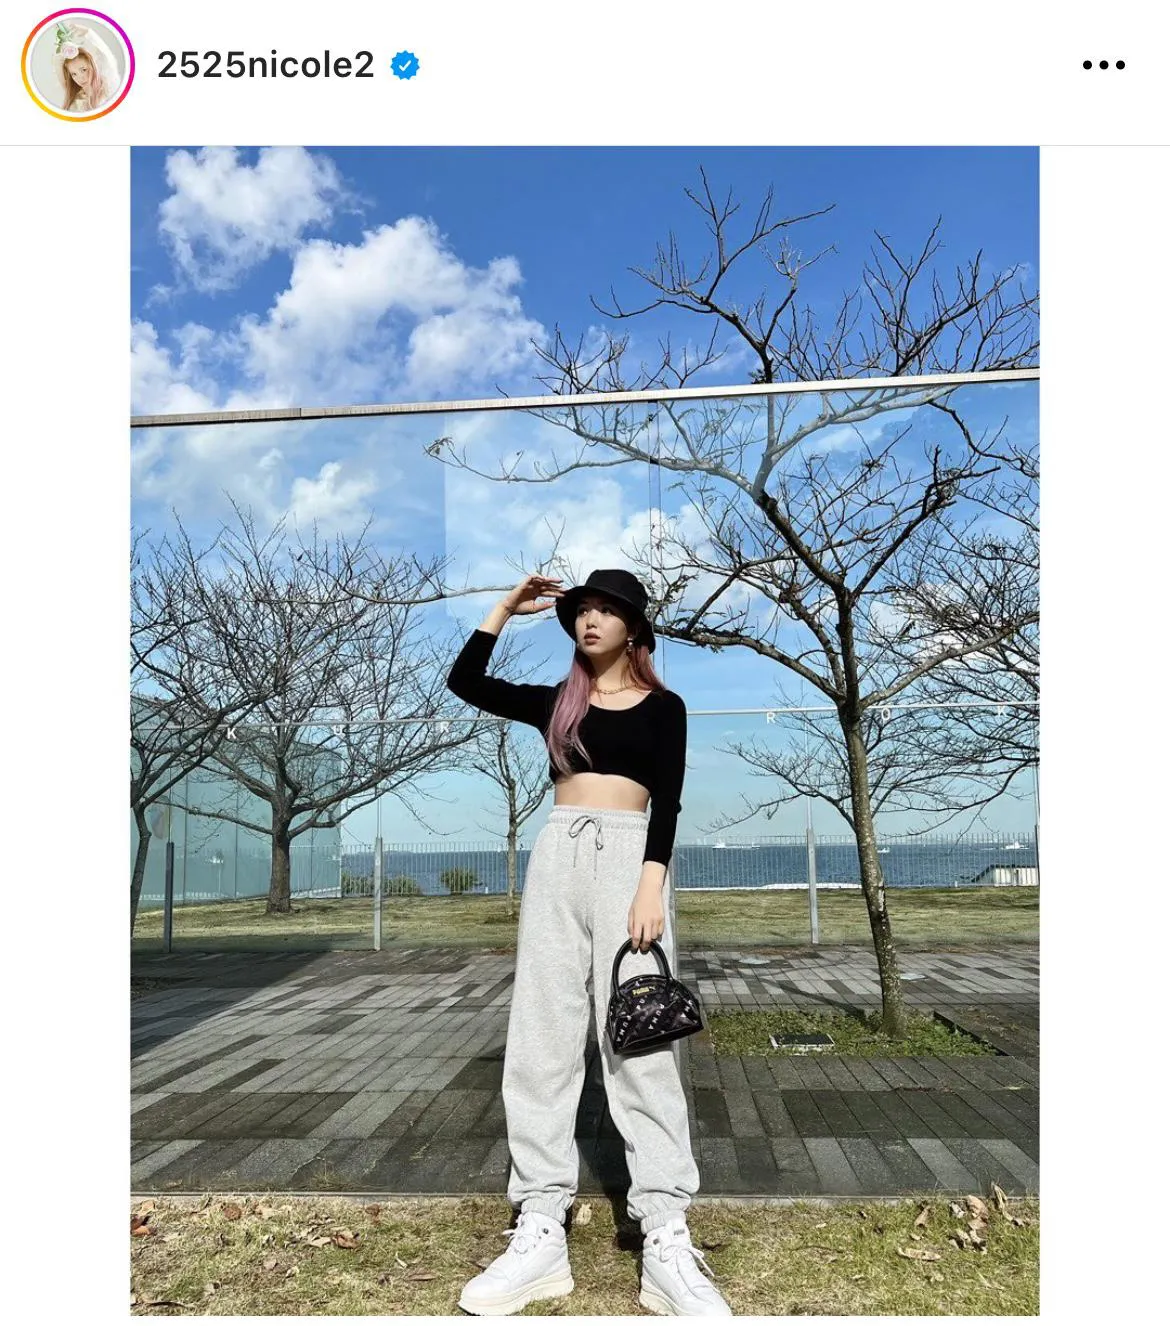 ※藤田ニコル公式Instagram(2525nicole2)より